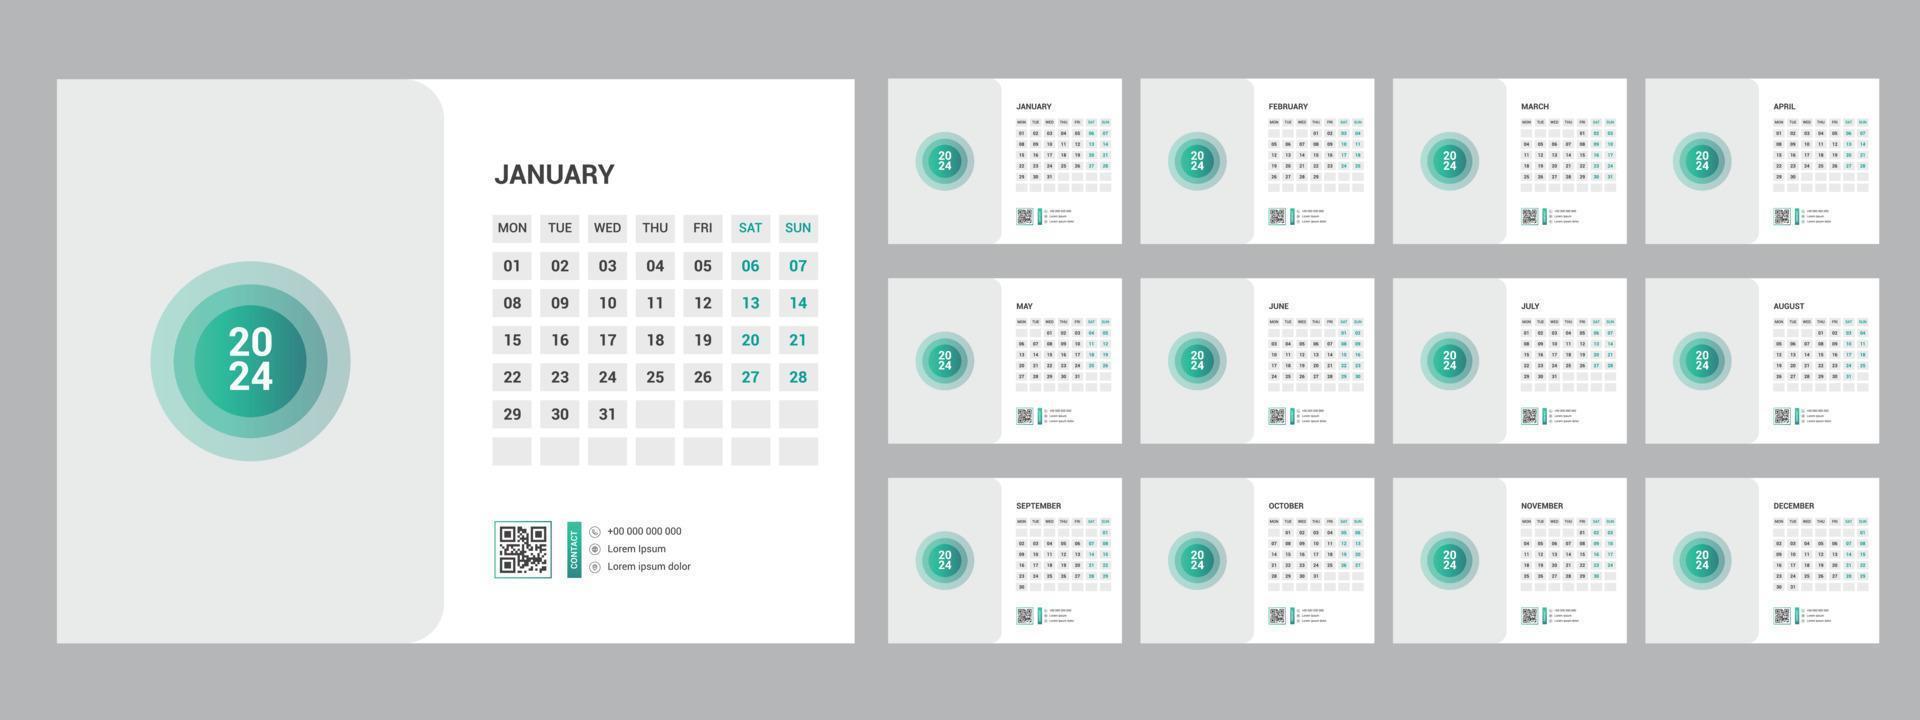 2024 kalender planerare uppsättning för mall företags- design vecka Start på söndag. vektor